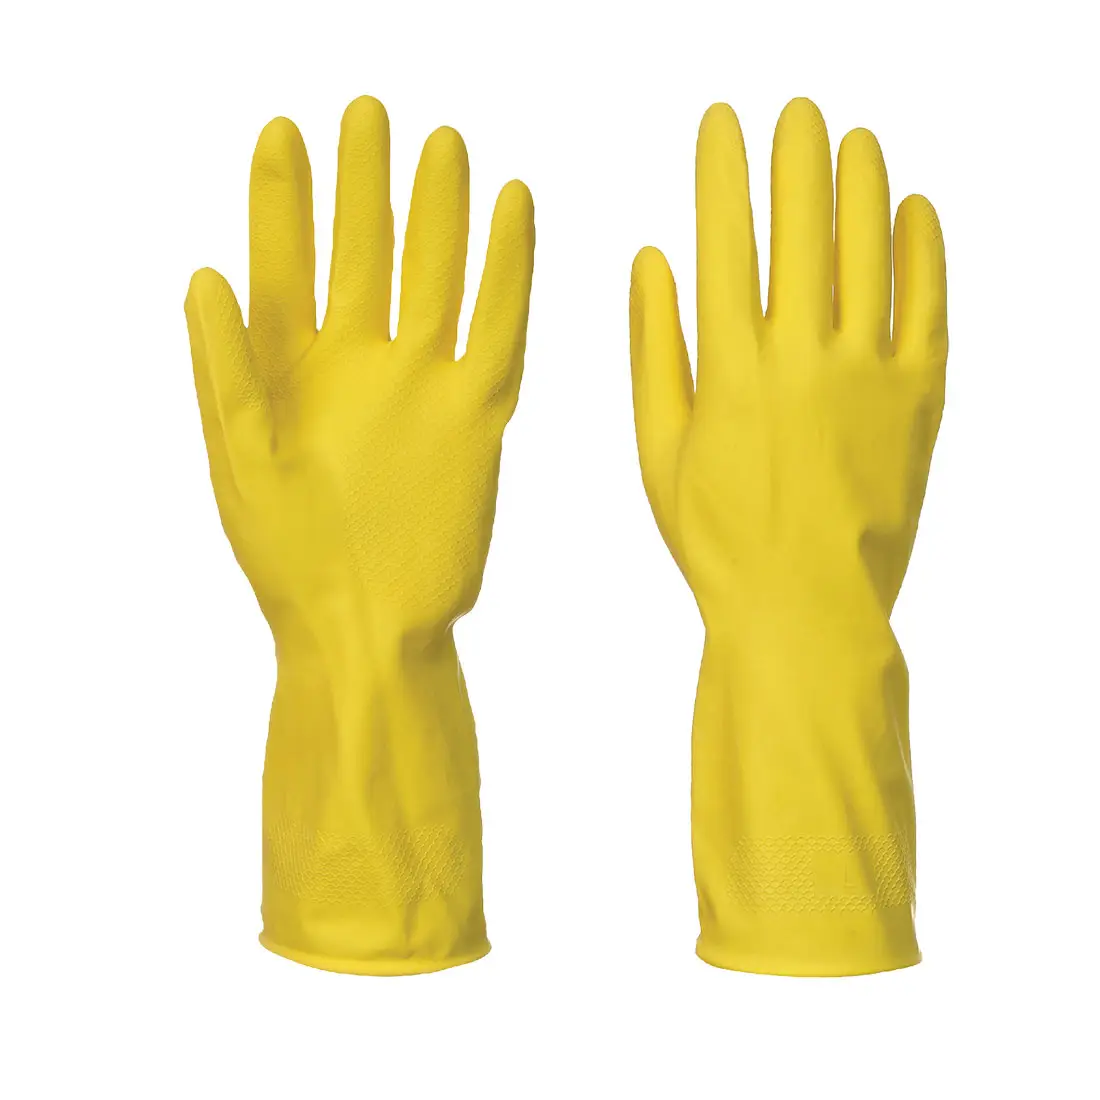 Хозяйственные резиновые перчатки